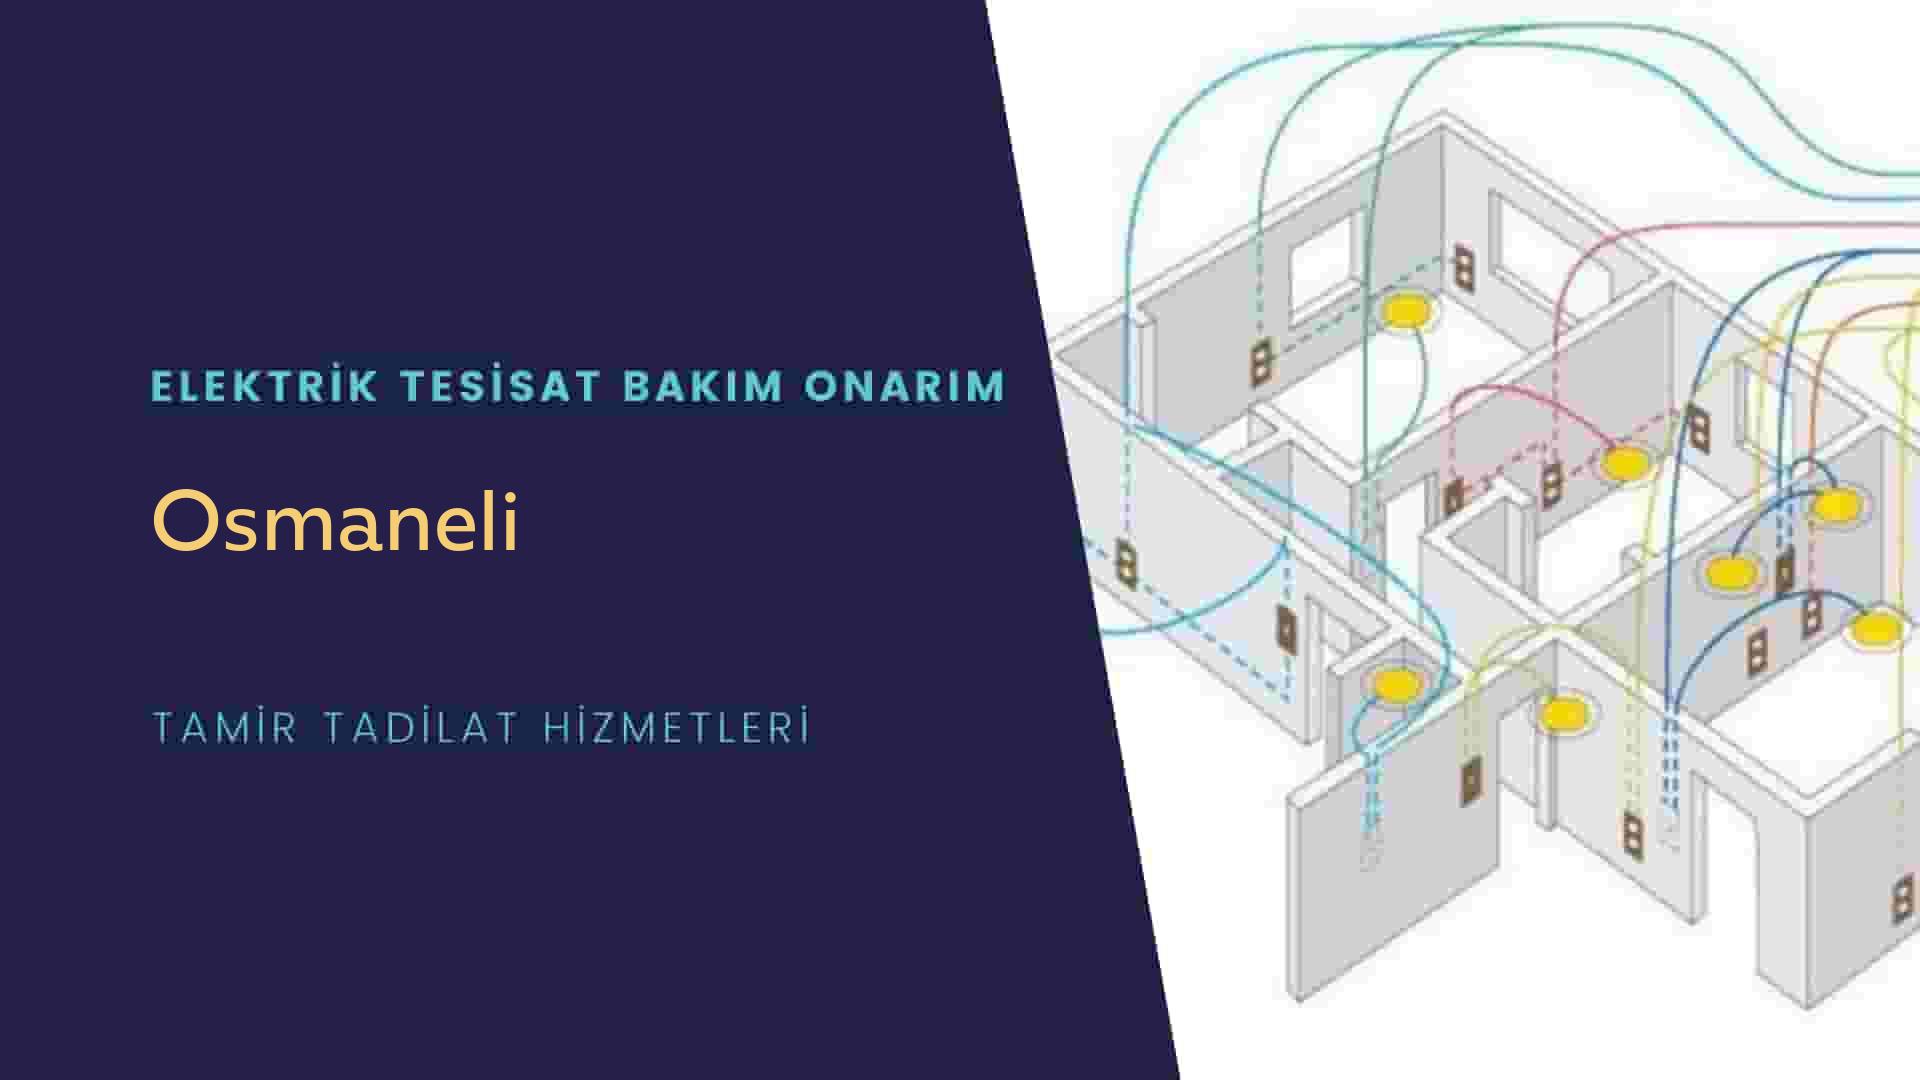 Osmaneli'de elektrik tesisatı ustalarımı arıyorsunuz doğru adrestenizi Osmaneli elektrik tesisatı ustalarımız 7/24 sizlere hizmet vermekten mutluluk duyar.